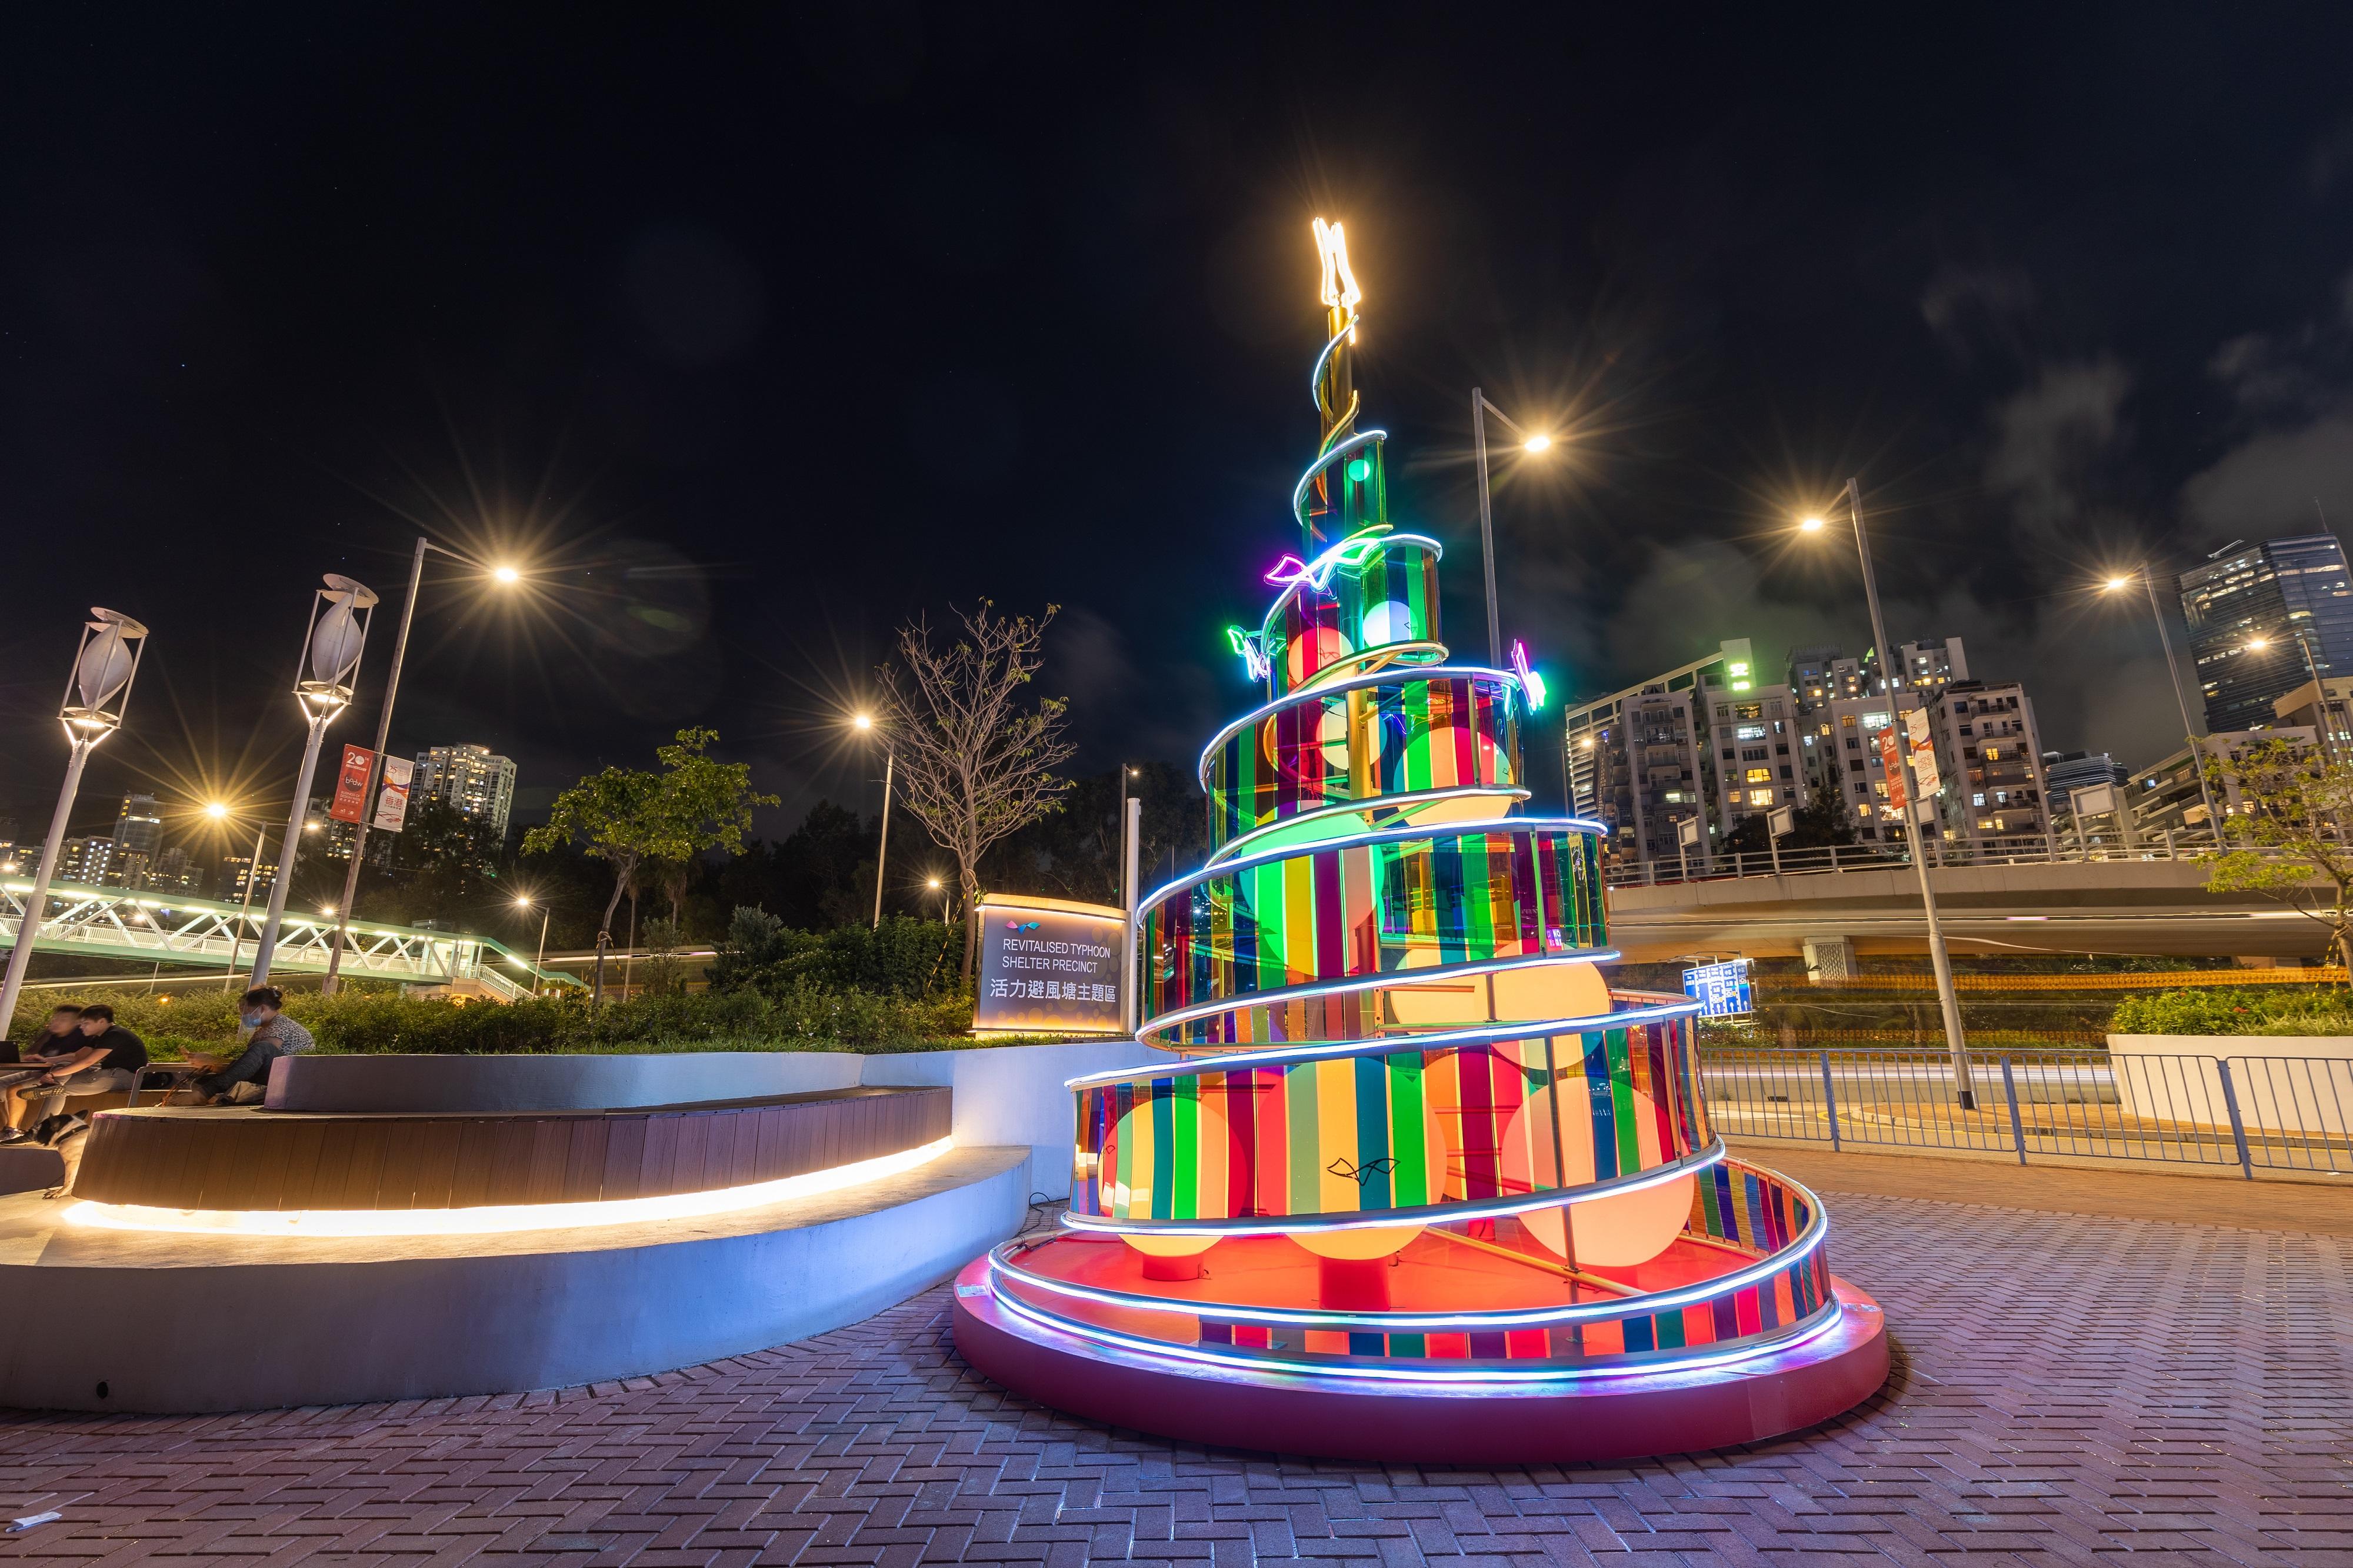 今年的海濱聖誕活動傳承「一個聖誕‧一個維港」的理念，並以「Your Show Time」為主題串連七個海濱場地。圖示位於銅鑼灣「活力避風塘主題區」以絲帶舞為主題的聖誕樹。